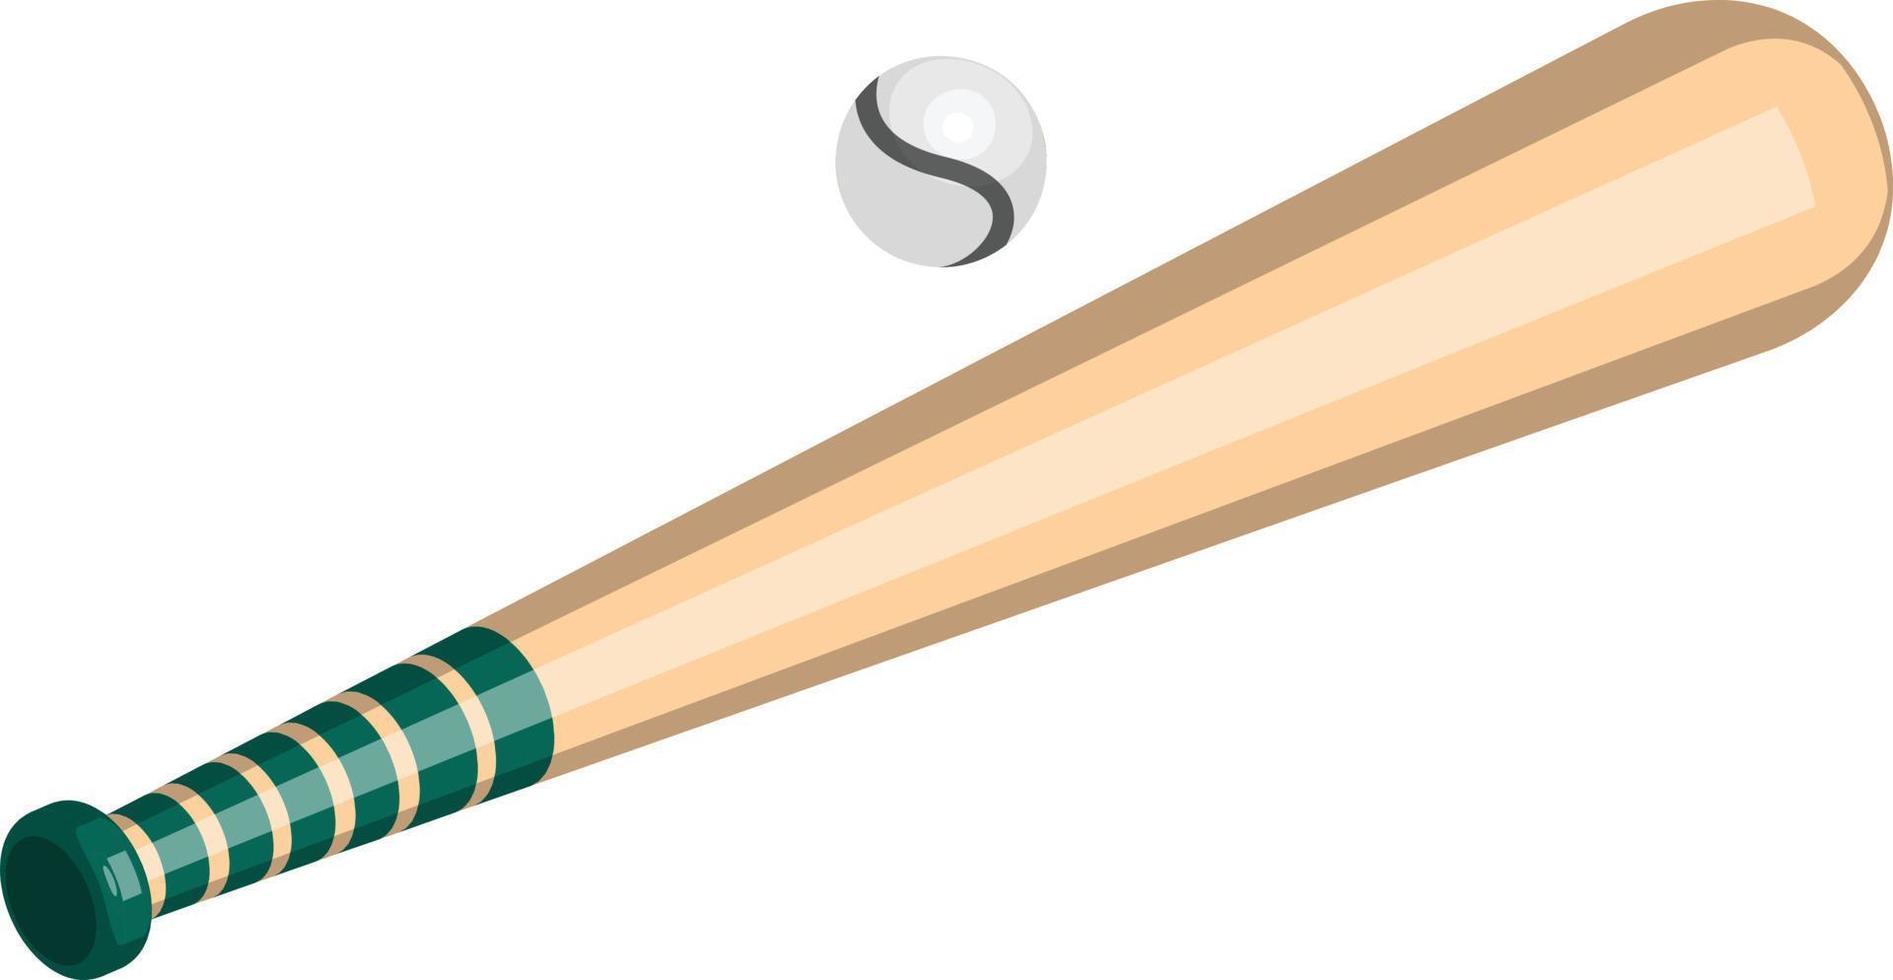 Baseball-Illustration im isometrischen 3D-Stil vektor